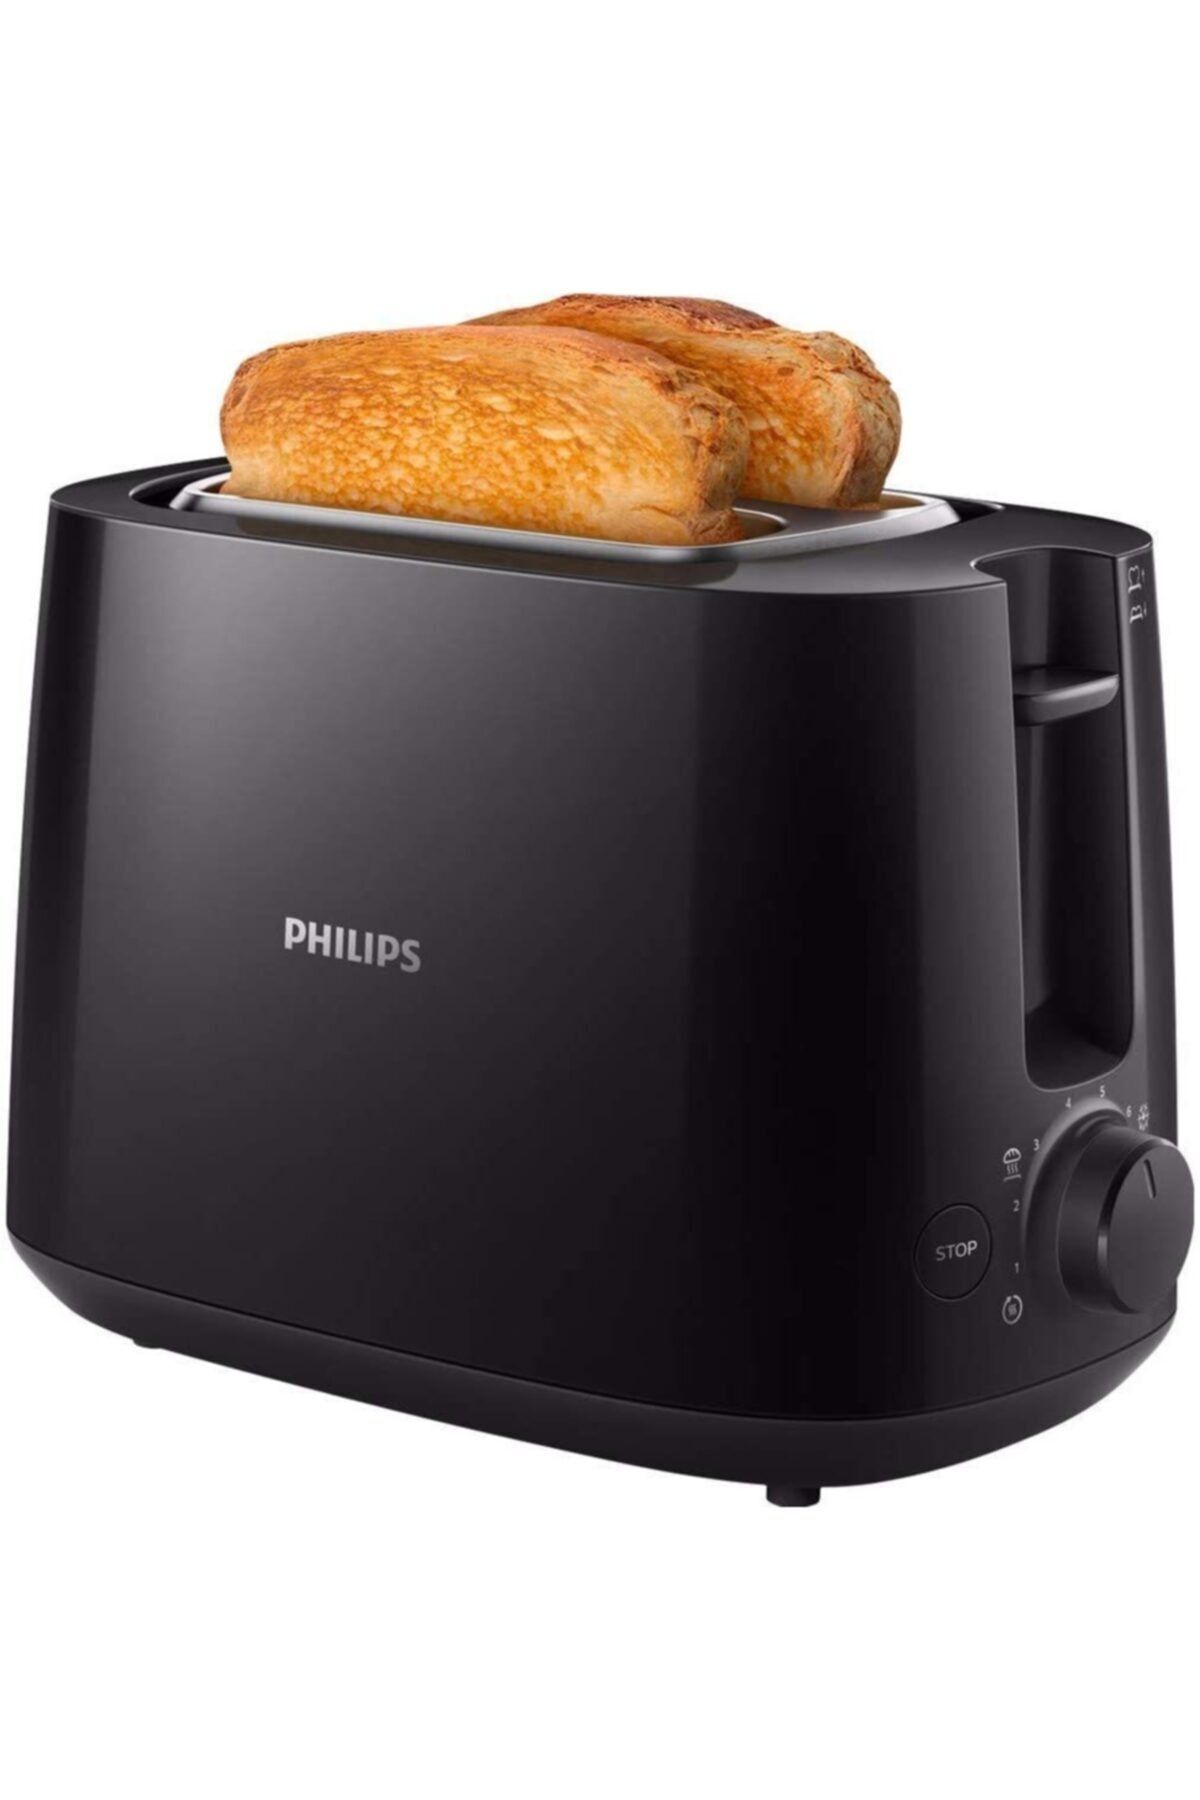 Philips Ekmek Kızartma Makinesi - Otomatik Kapanma - 8 Kızartma Ayarı